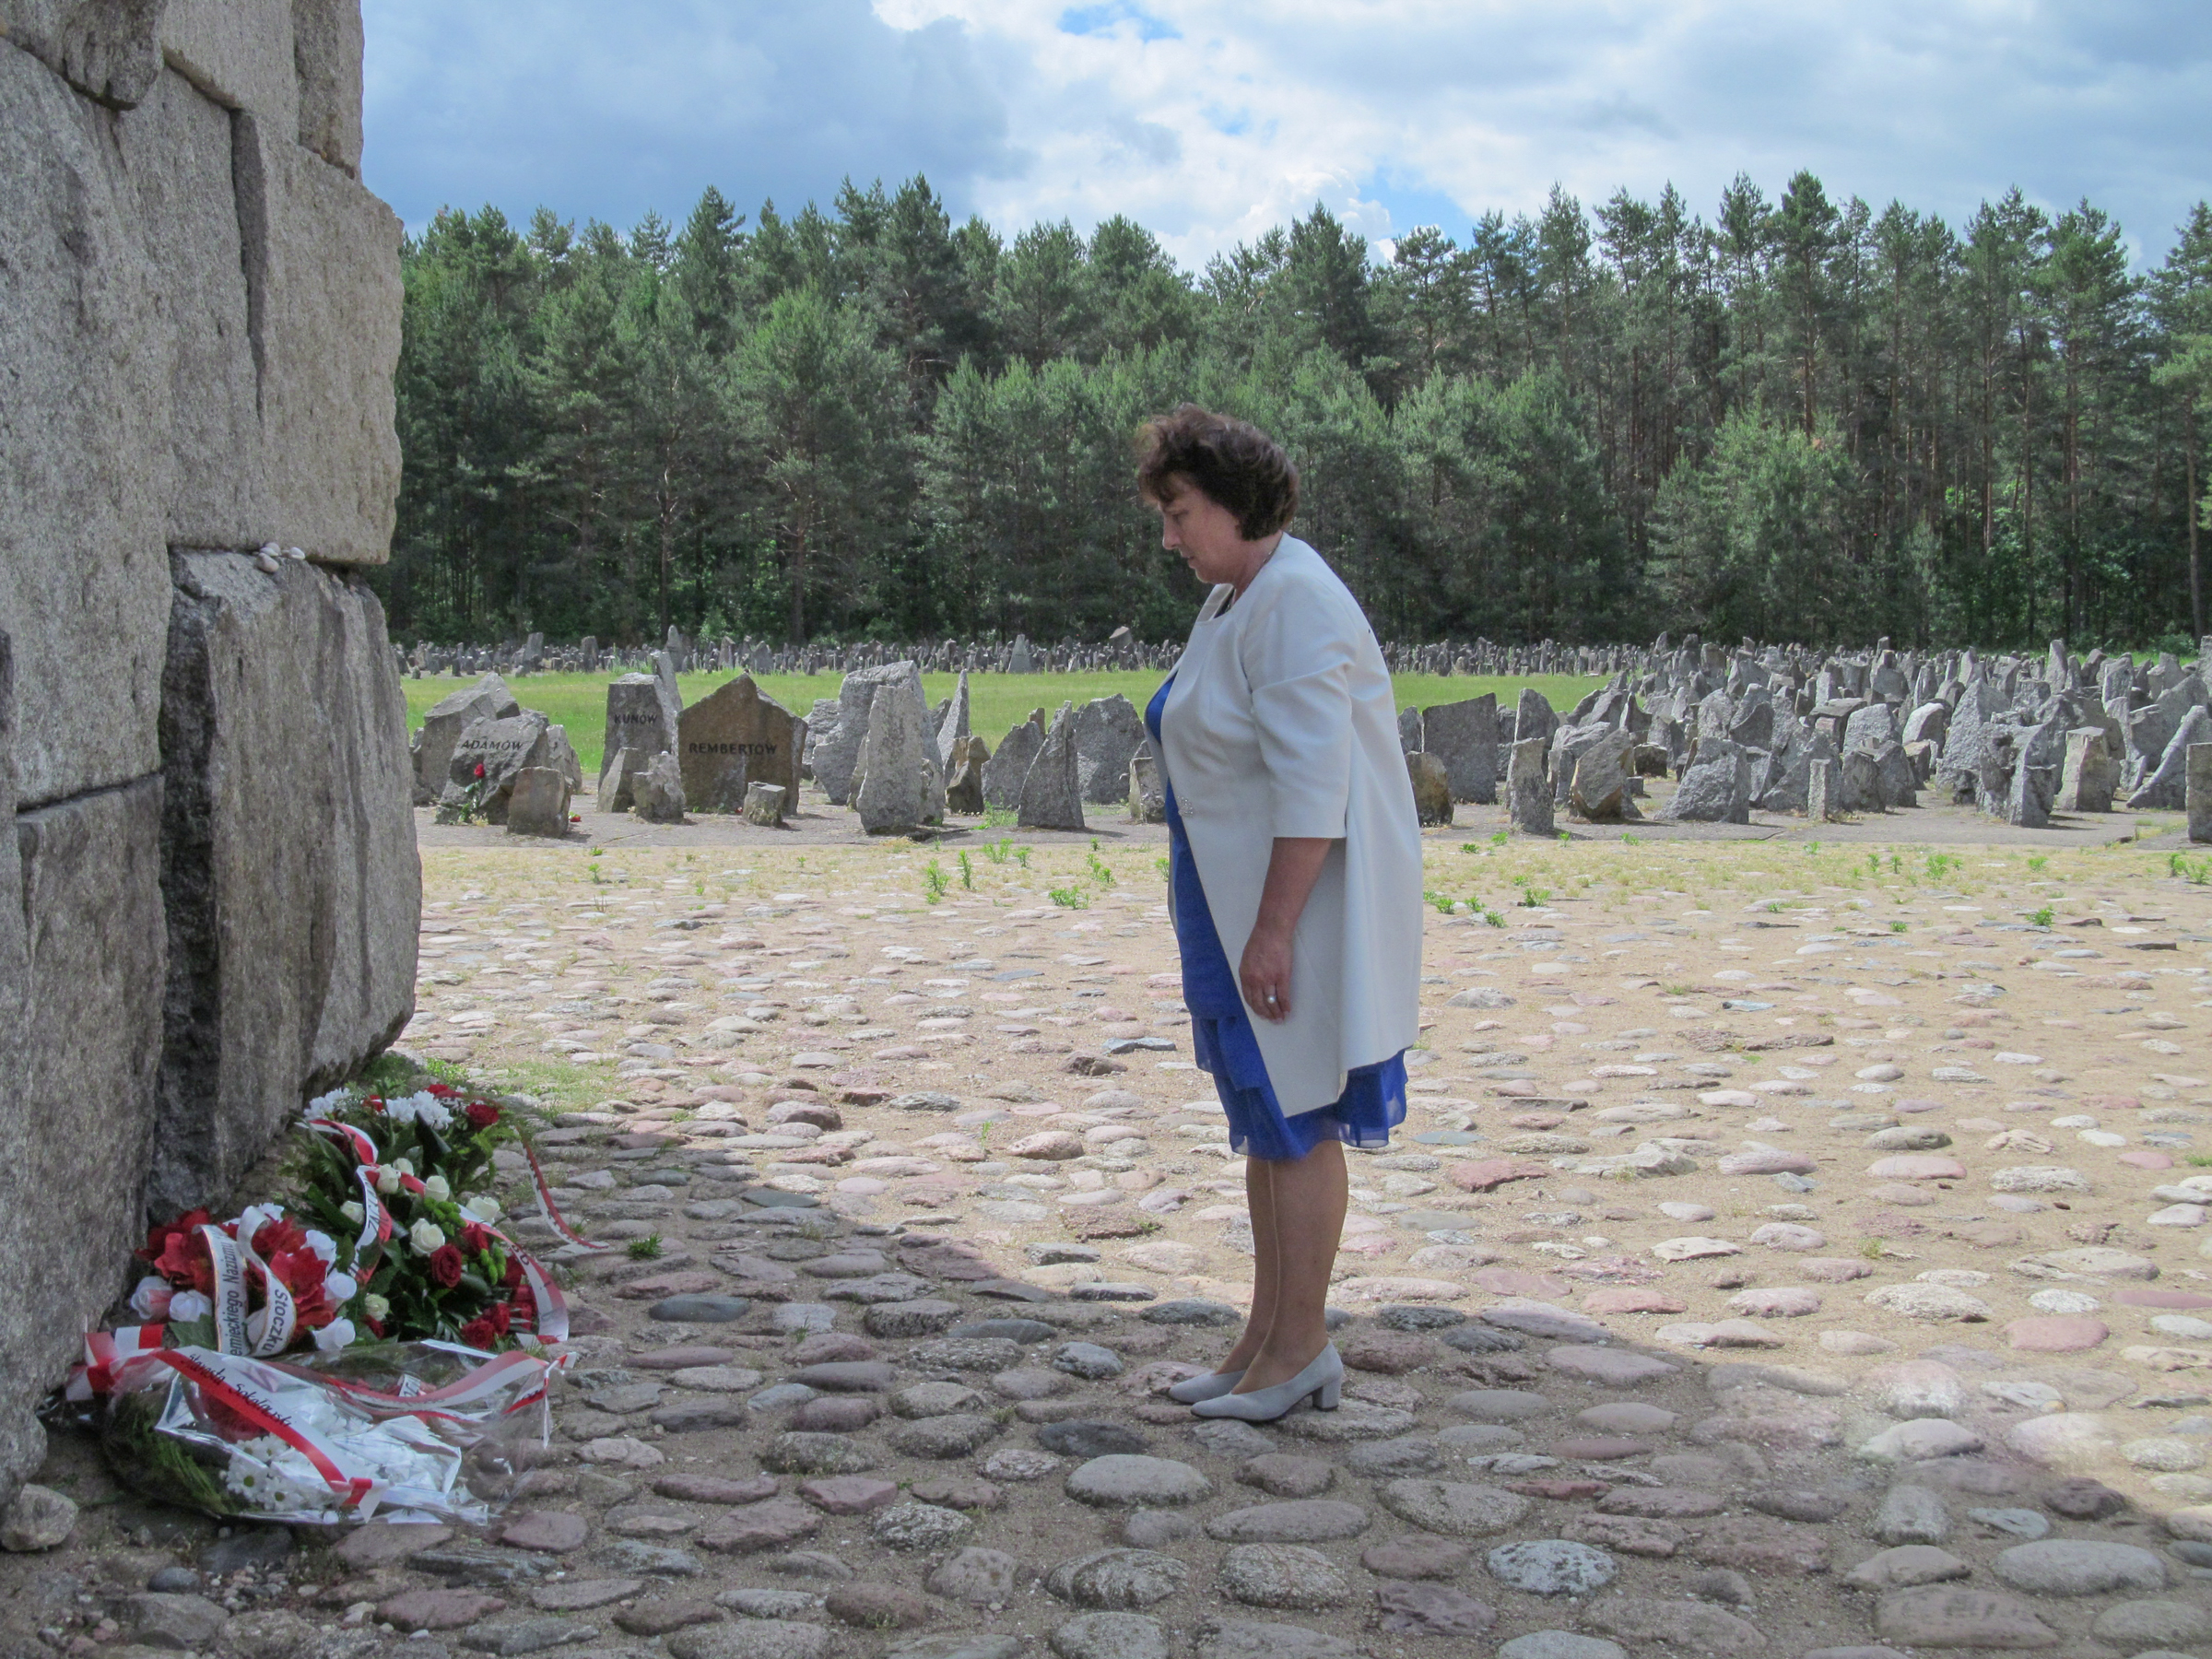 Fotografia przedstawia widok z boku na Starostę Elżbietę Sadowską, która stoi przed głównym monumentem Ofiar Obozu Zagłady w Treblince. W tle setki granitowych głazów upamiętniających Ofiary. W oddali widać ścianę lasu.